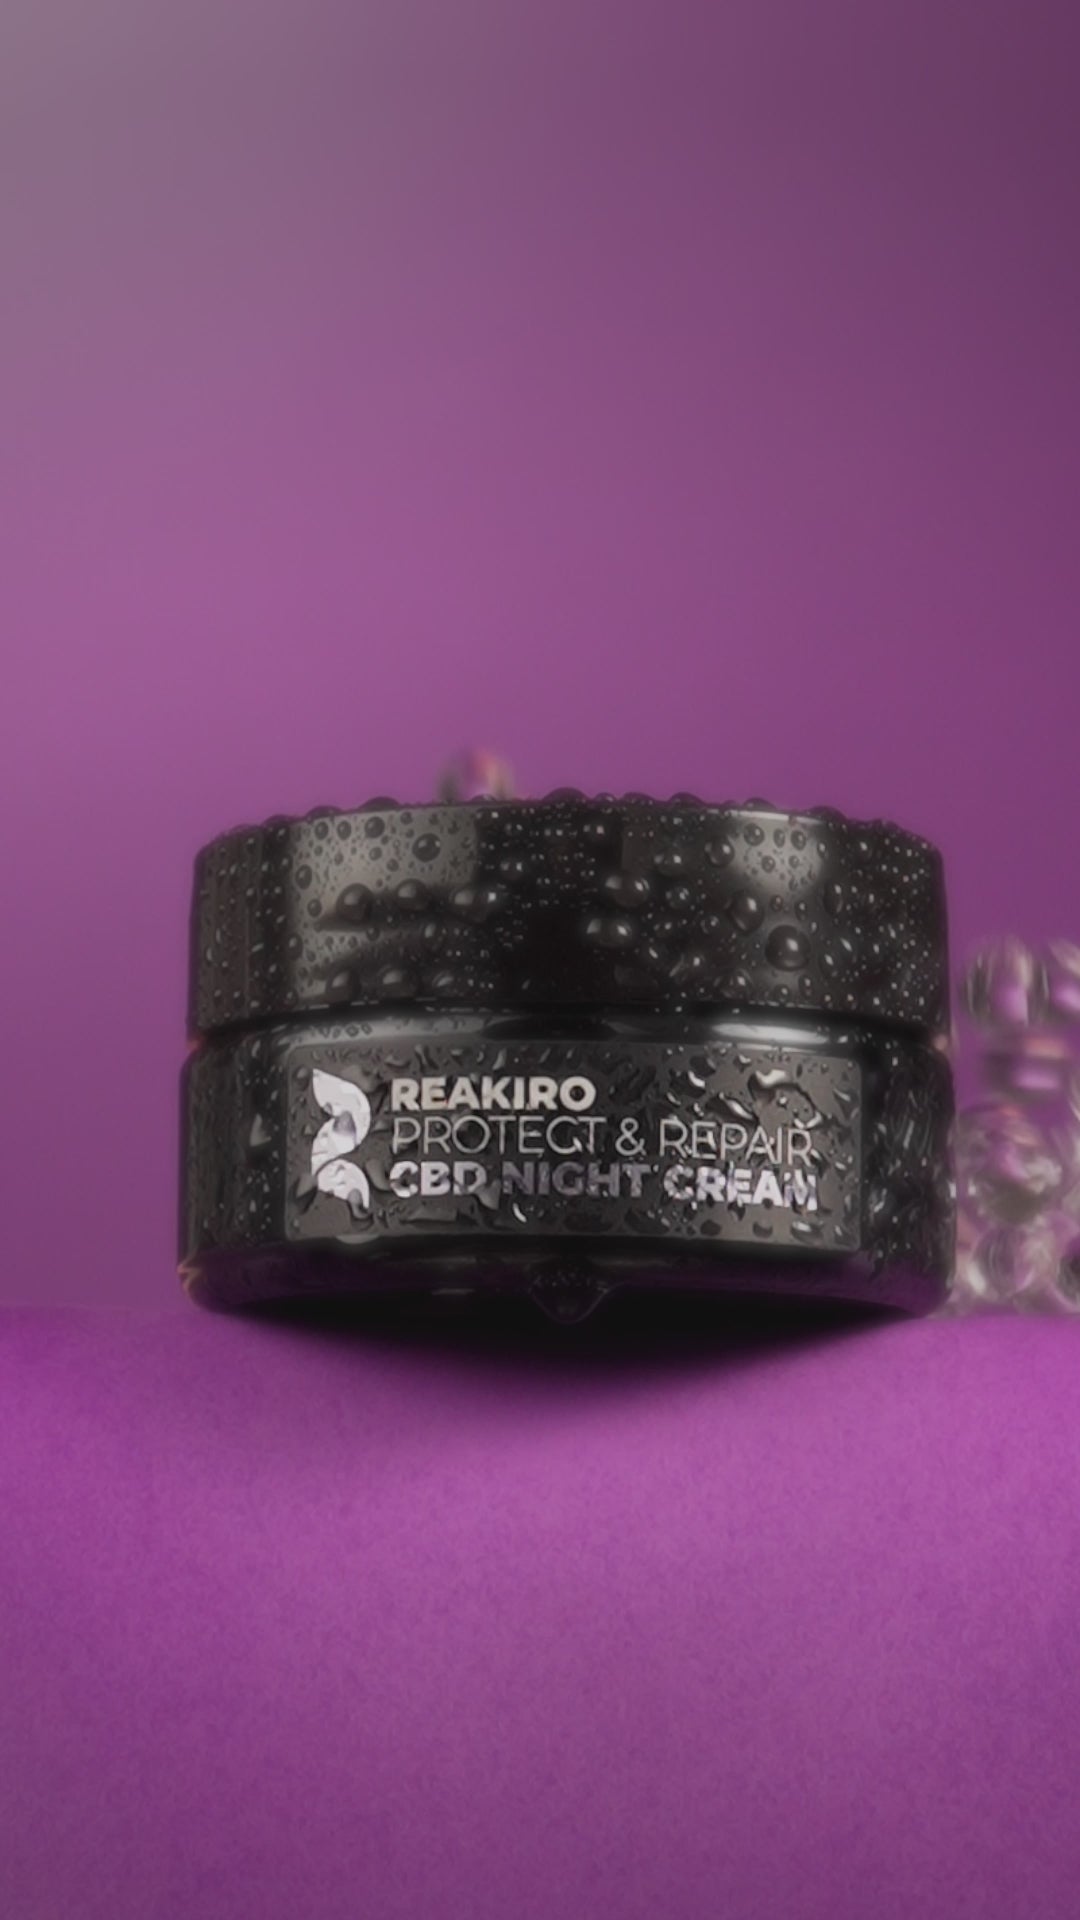 Reakiro Cbd Night Cream Protect & Repair